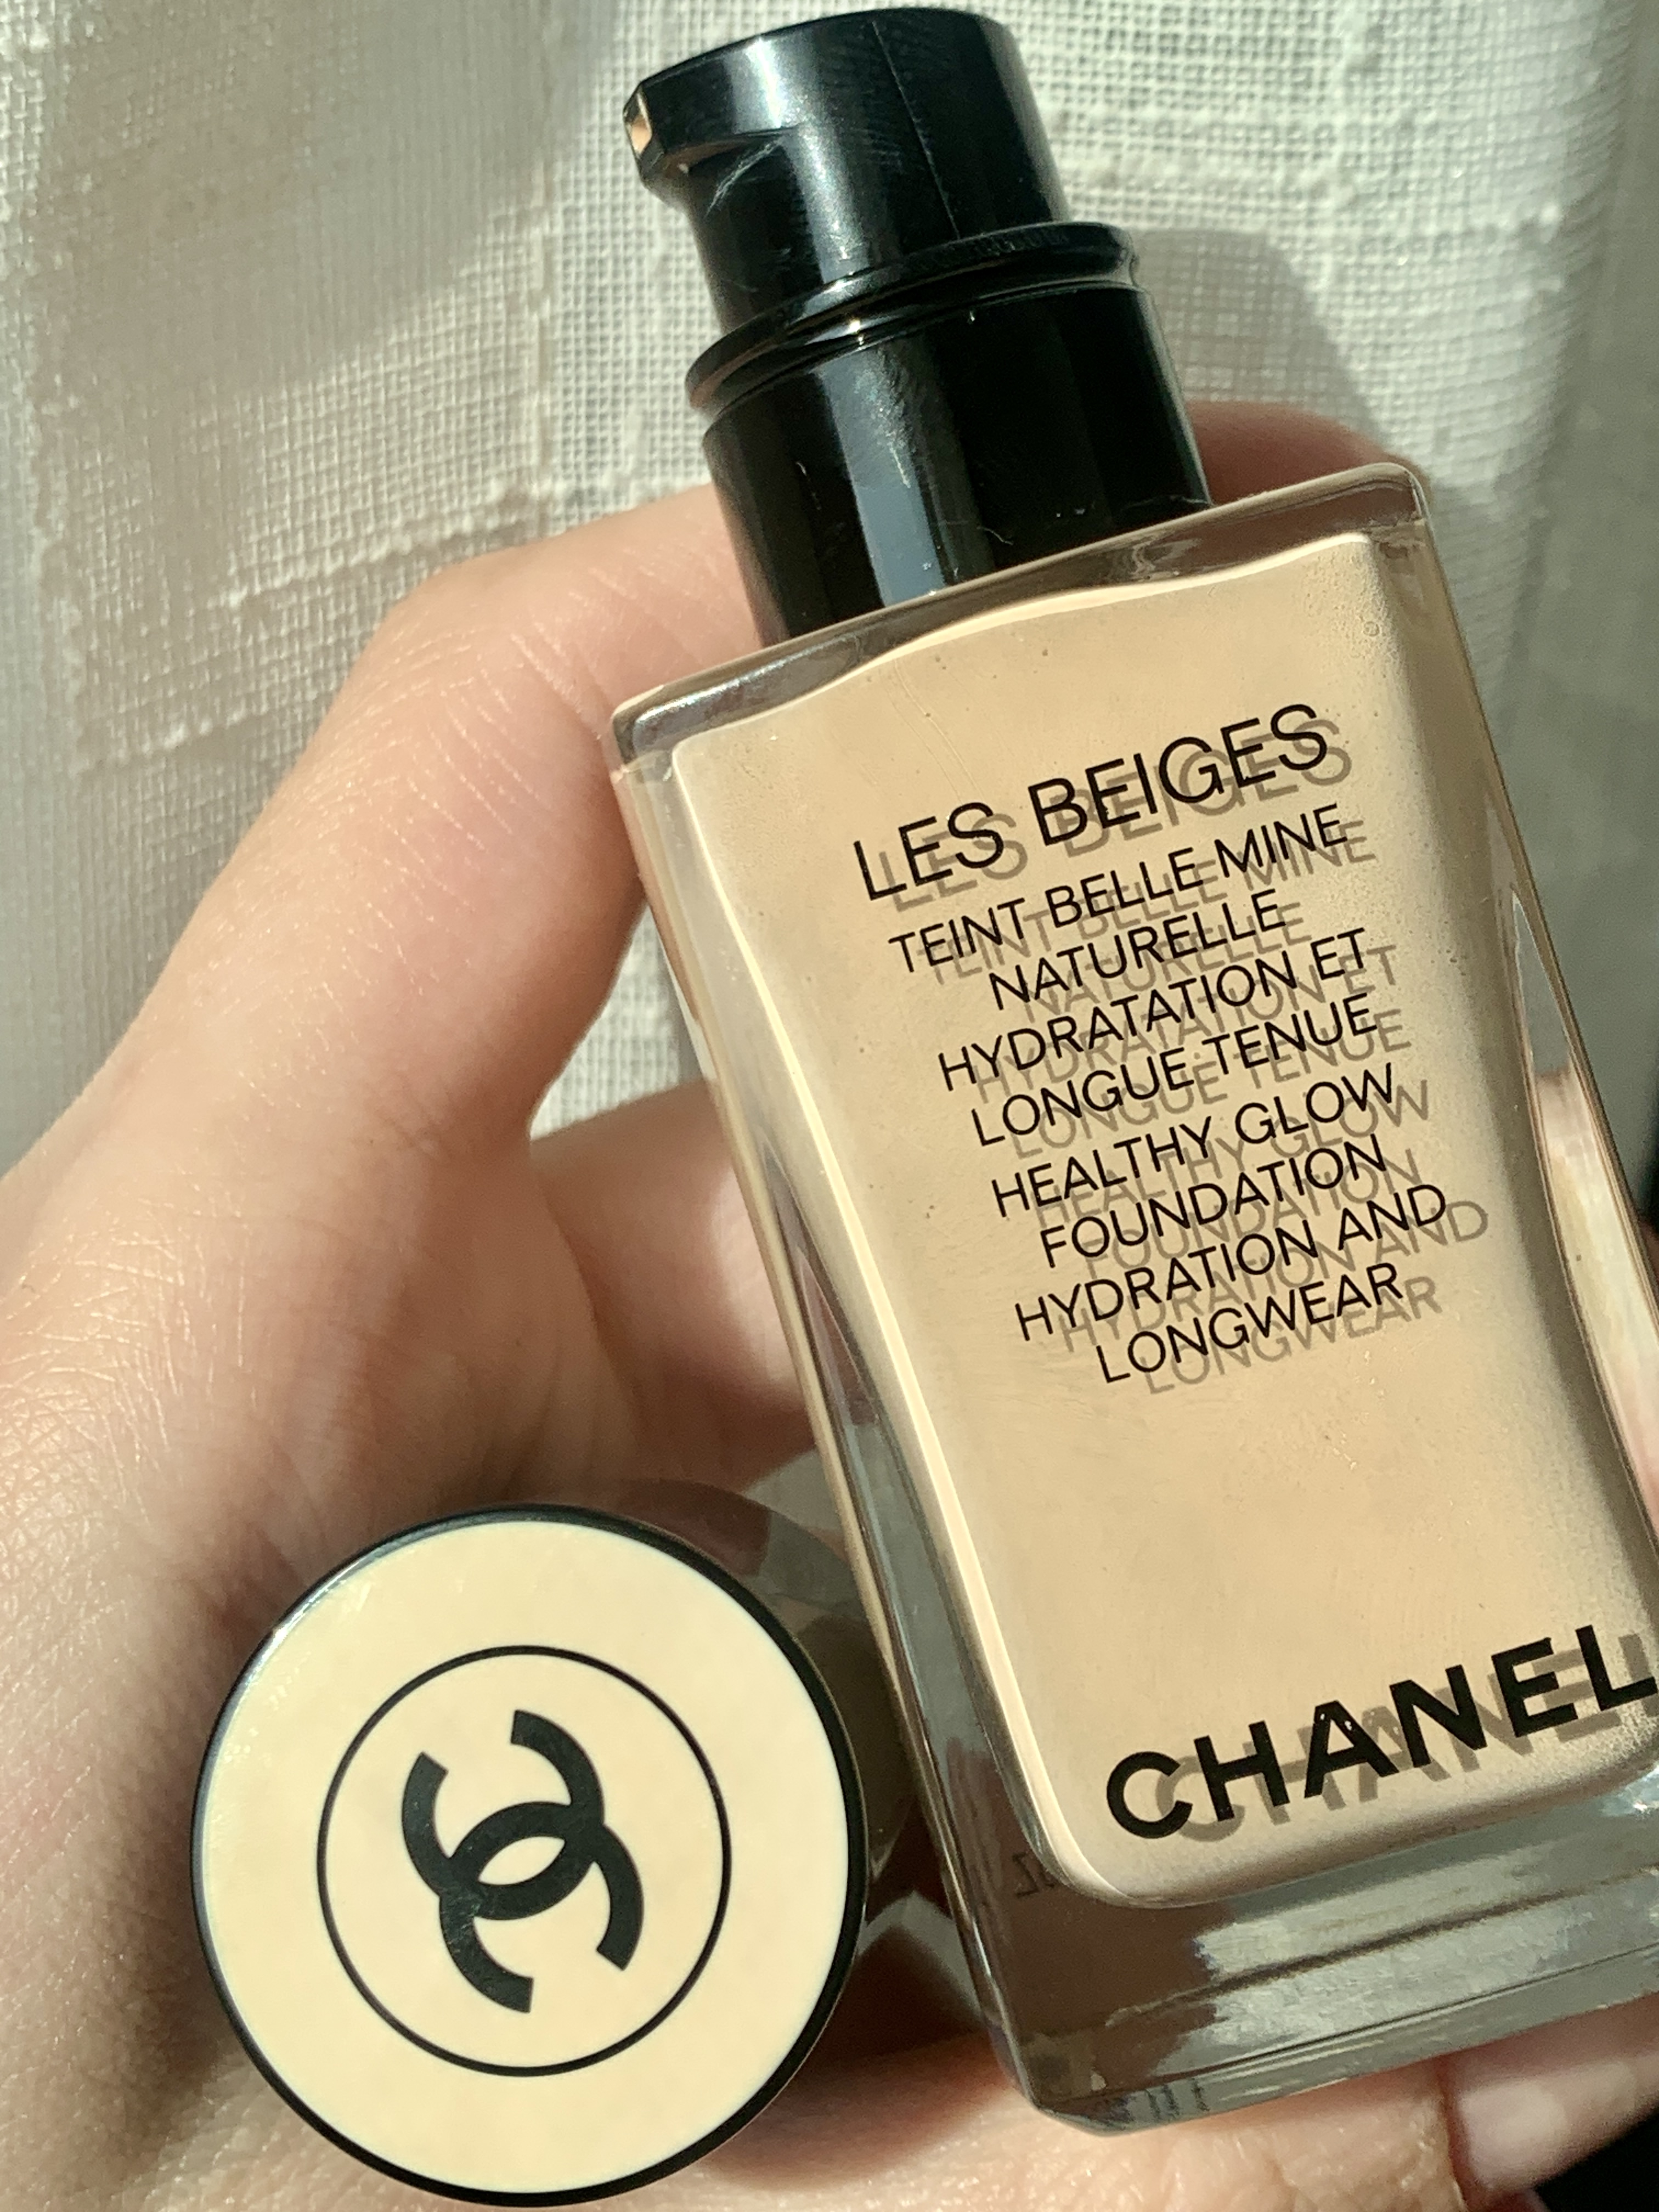 Chanel Les Beiges Teint Belle Mine Naturelle